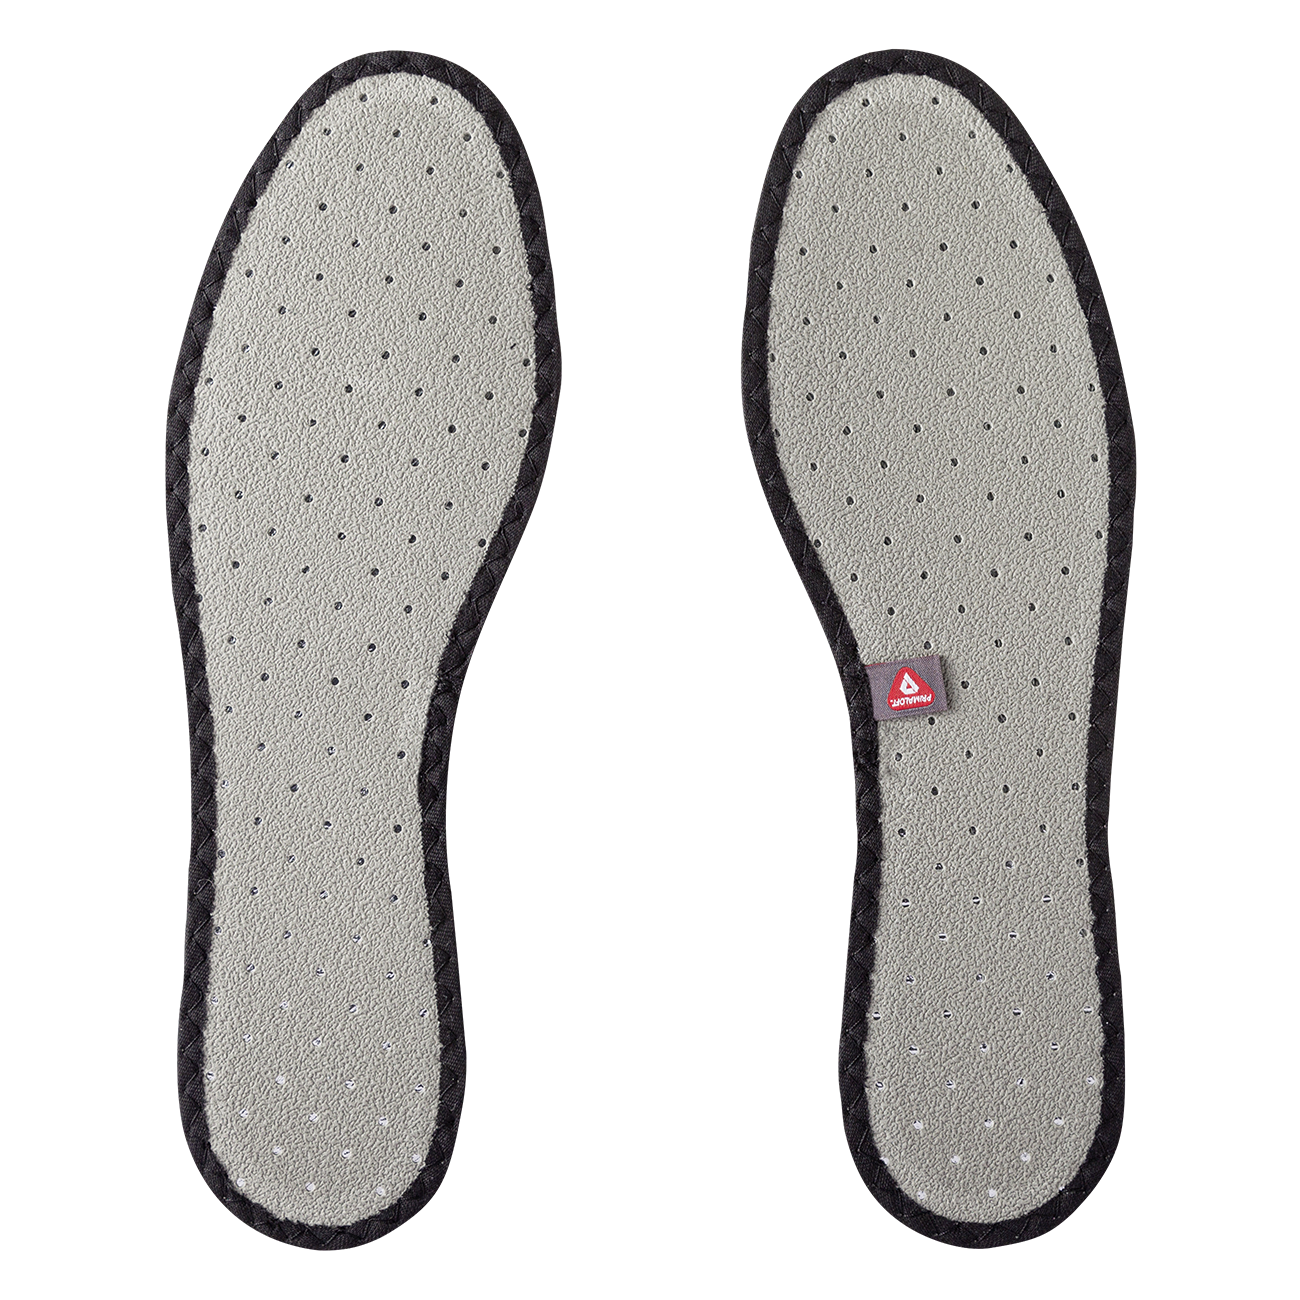 Bergal | Thermo Soft Einlegesohle für Schuhe - mittelstark wärmend (Art. 86605)